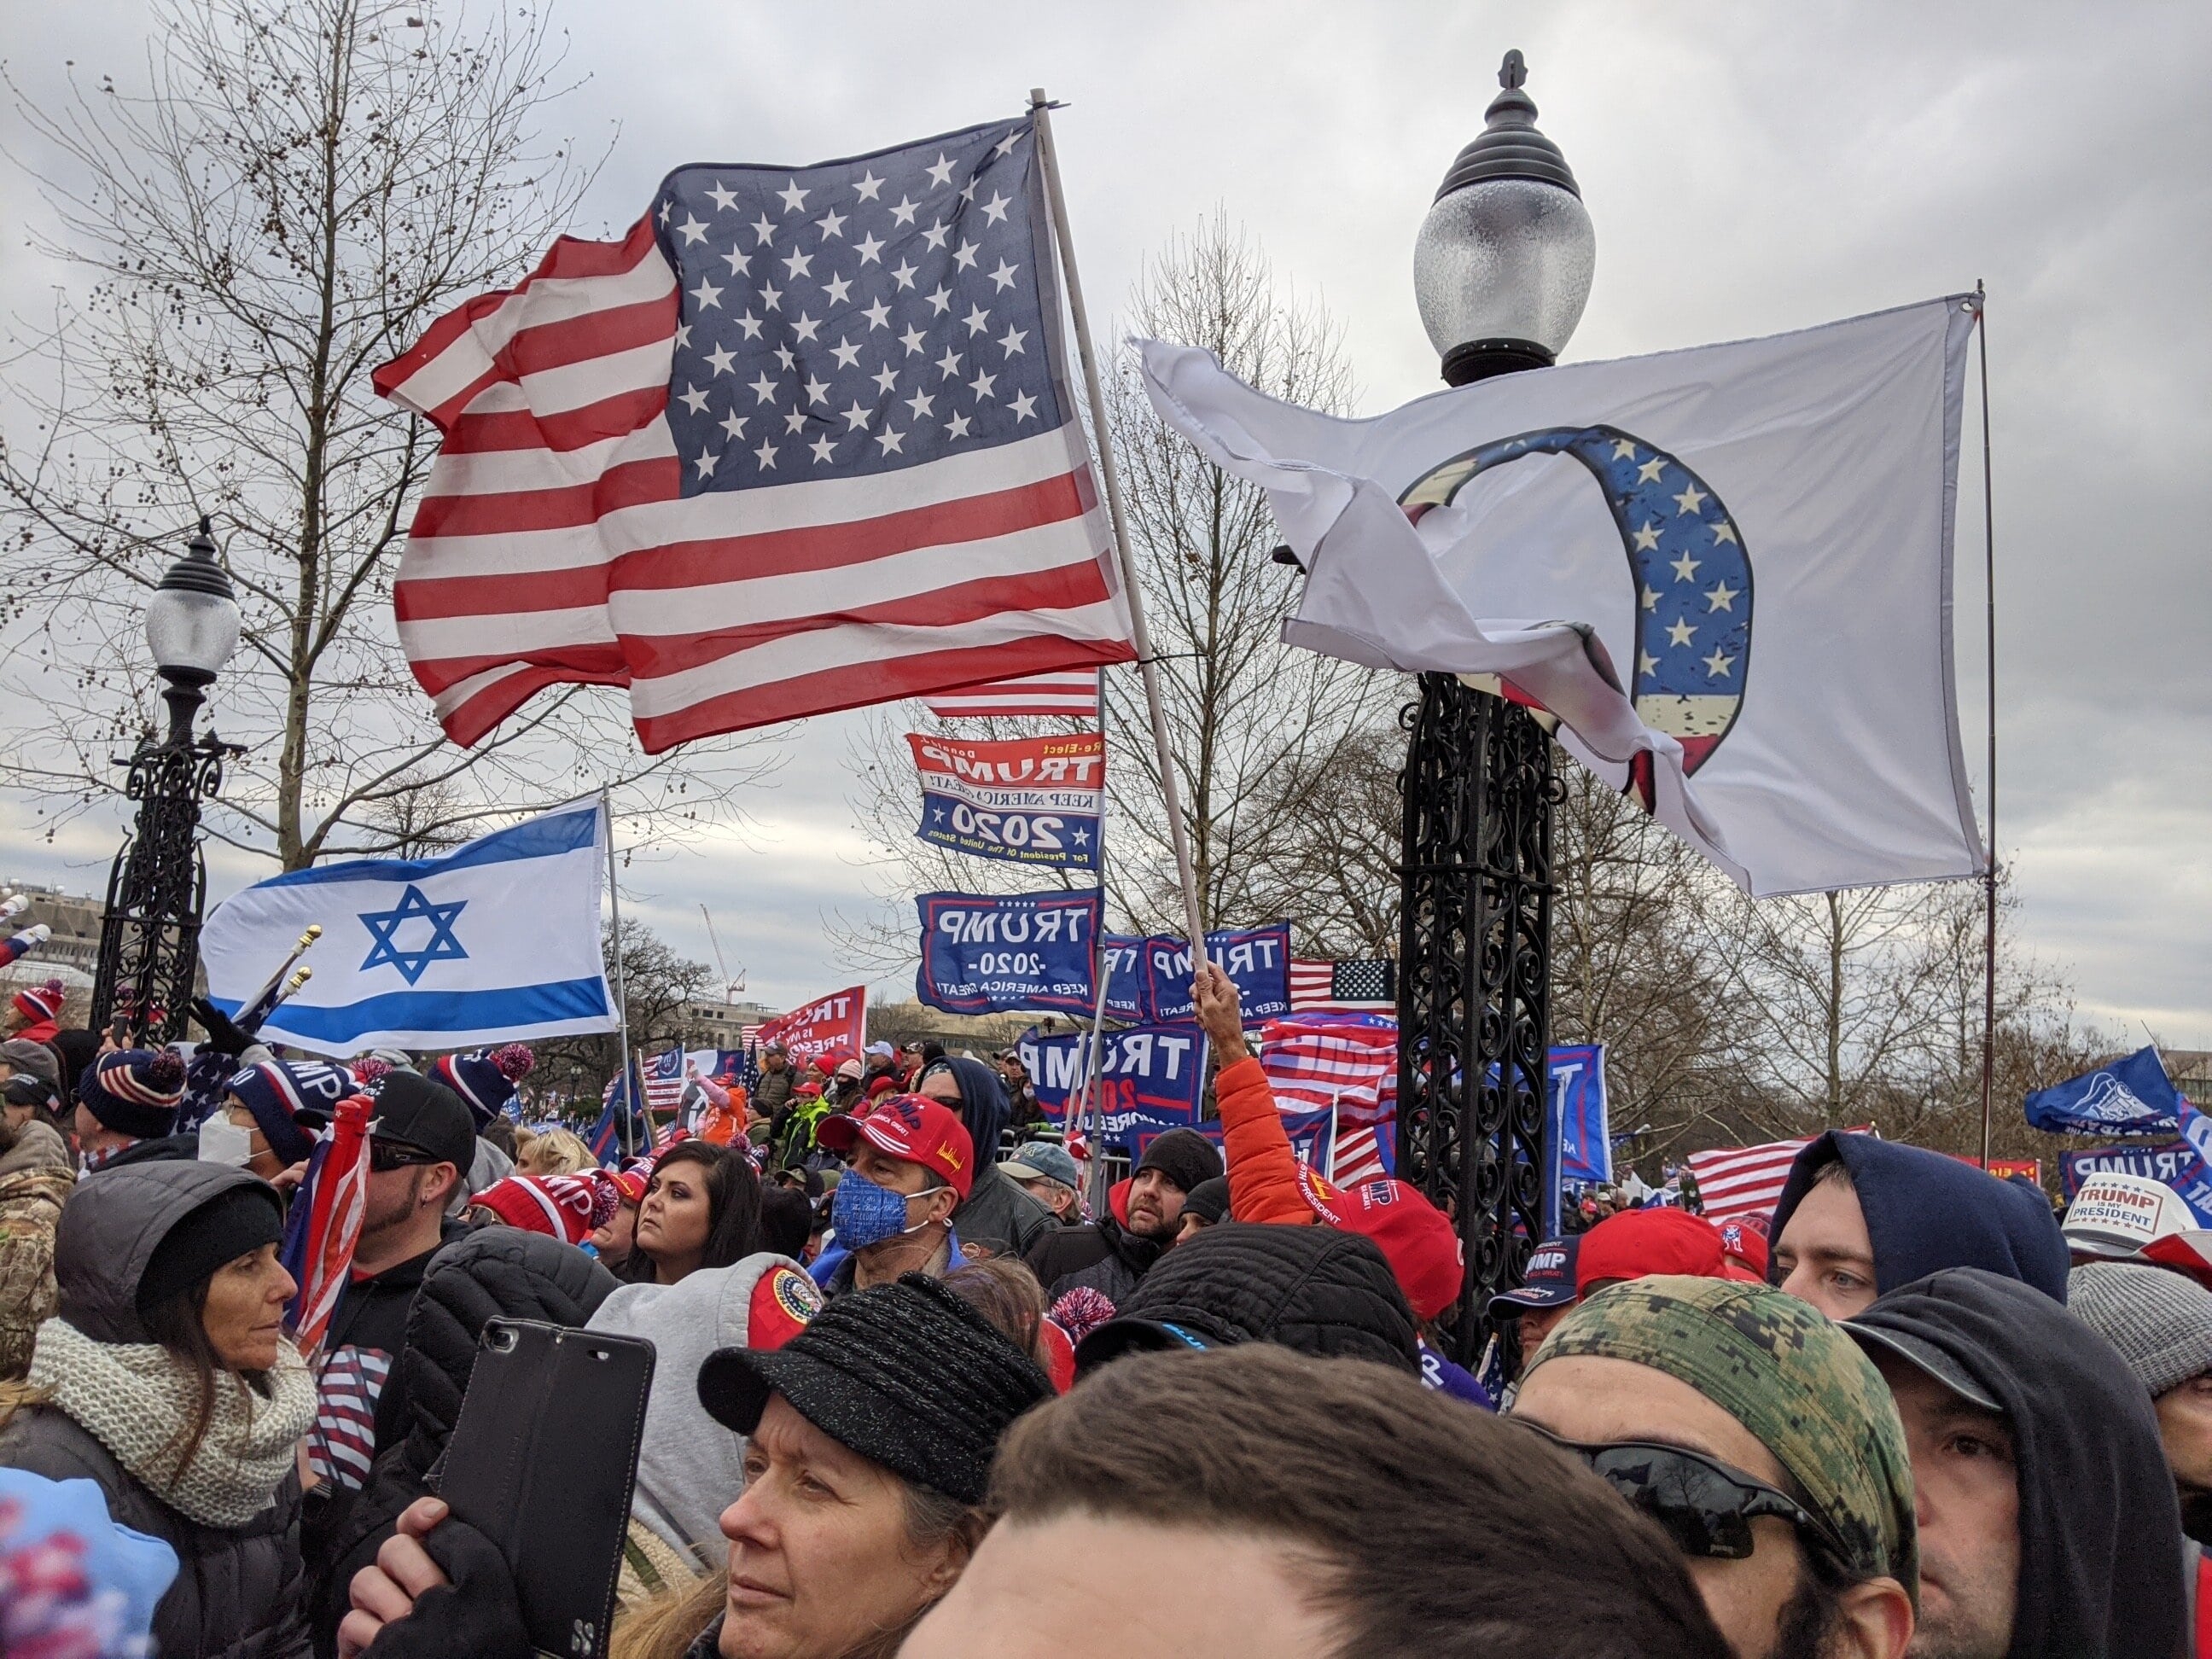 Un drapeau israélien près d’un drapeau QAnon (théorie du complot d’extrême droite) dans le rassemblement des partisans de Trump près du Capitole américain (MEE/Ali Harb)